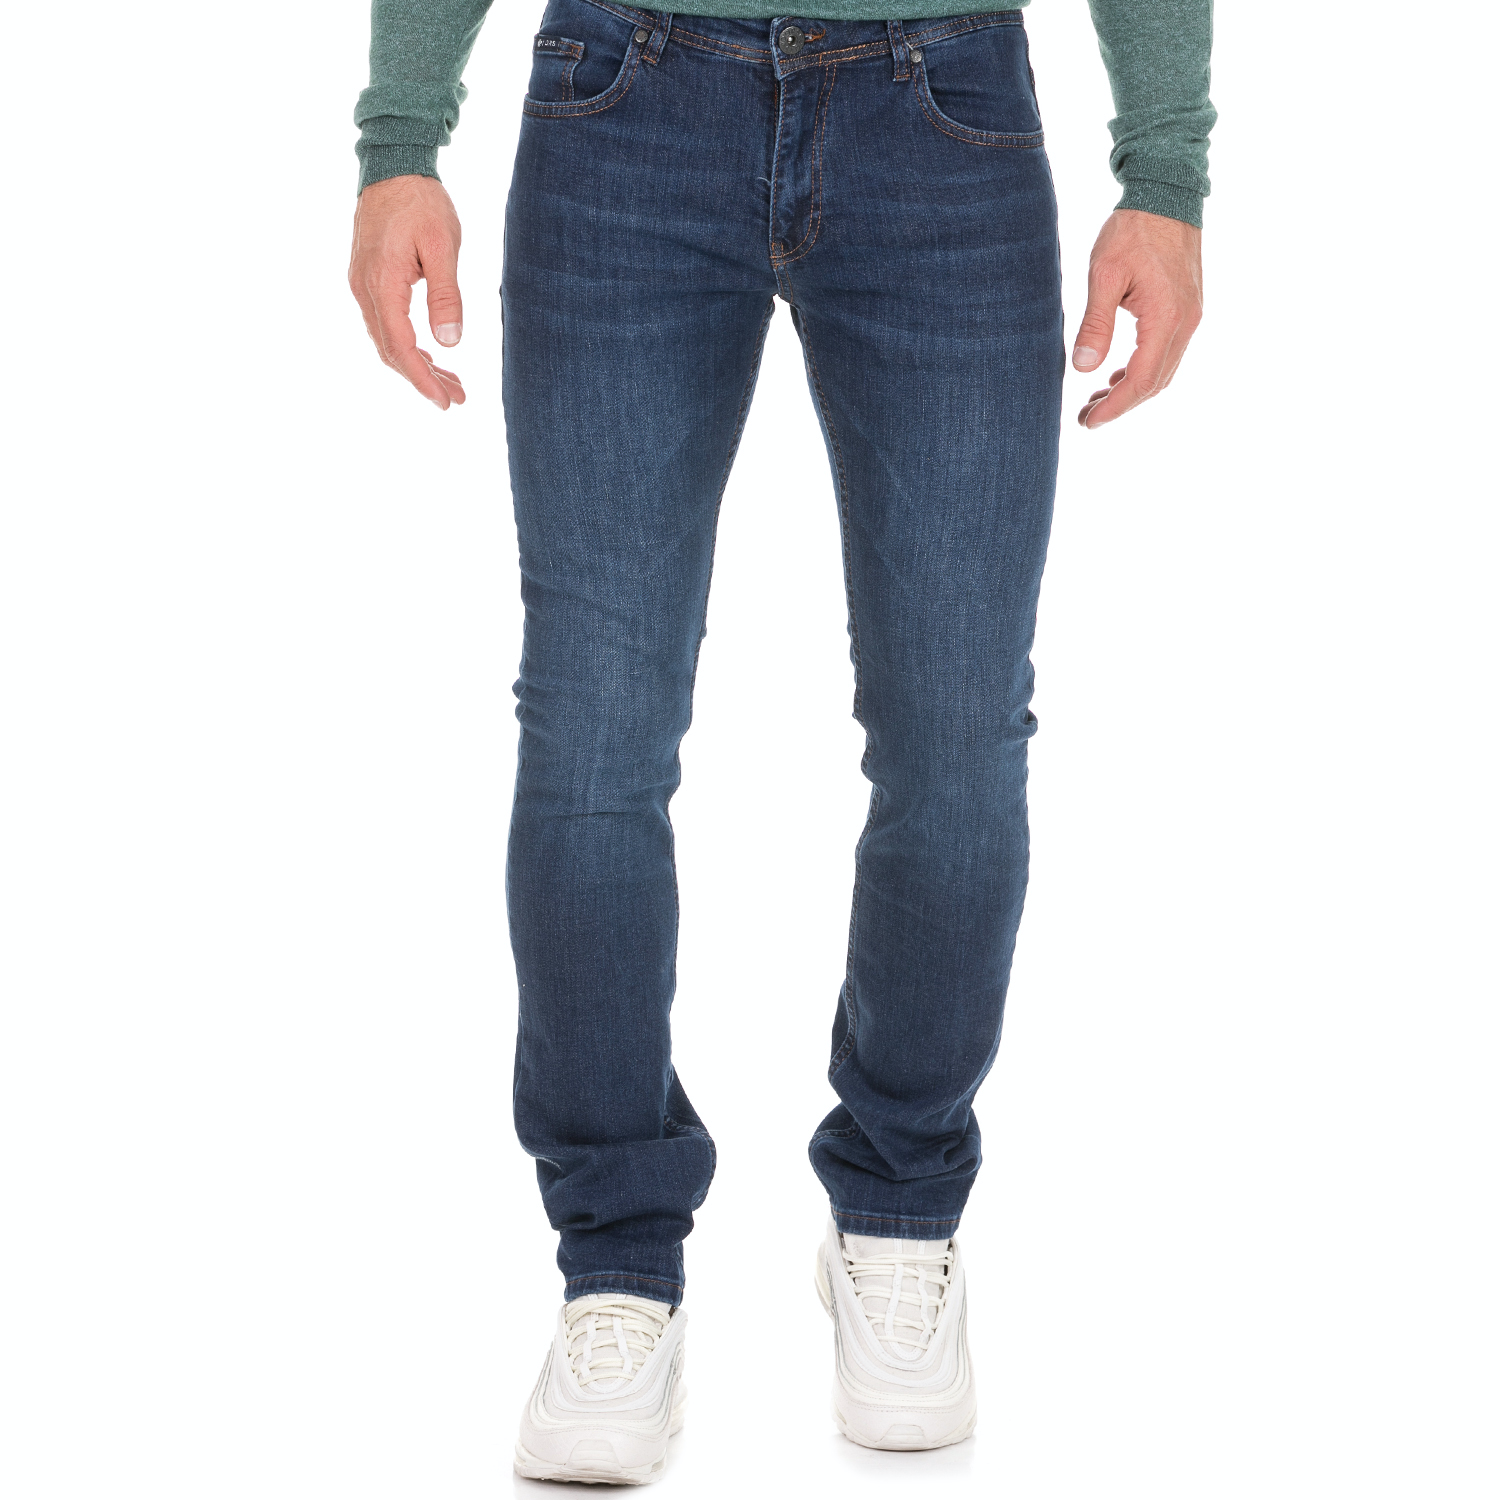 Ανδρικά/Ρούχα/Τζίν/Skinny DORS - Ανδρικό jean παντελόνι DORS μπλε